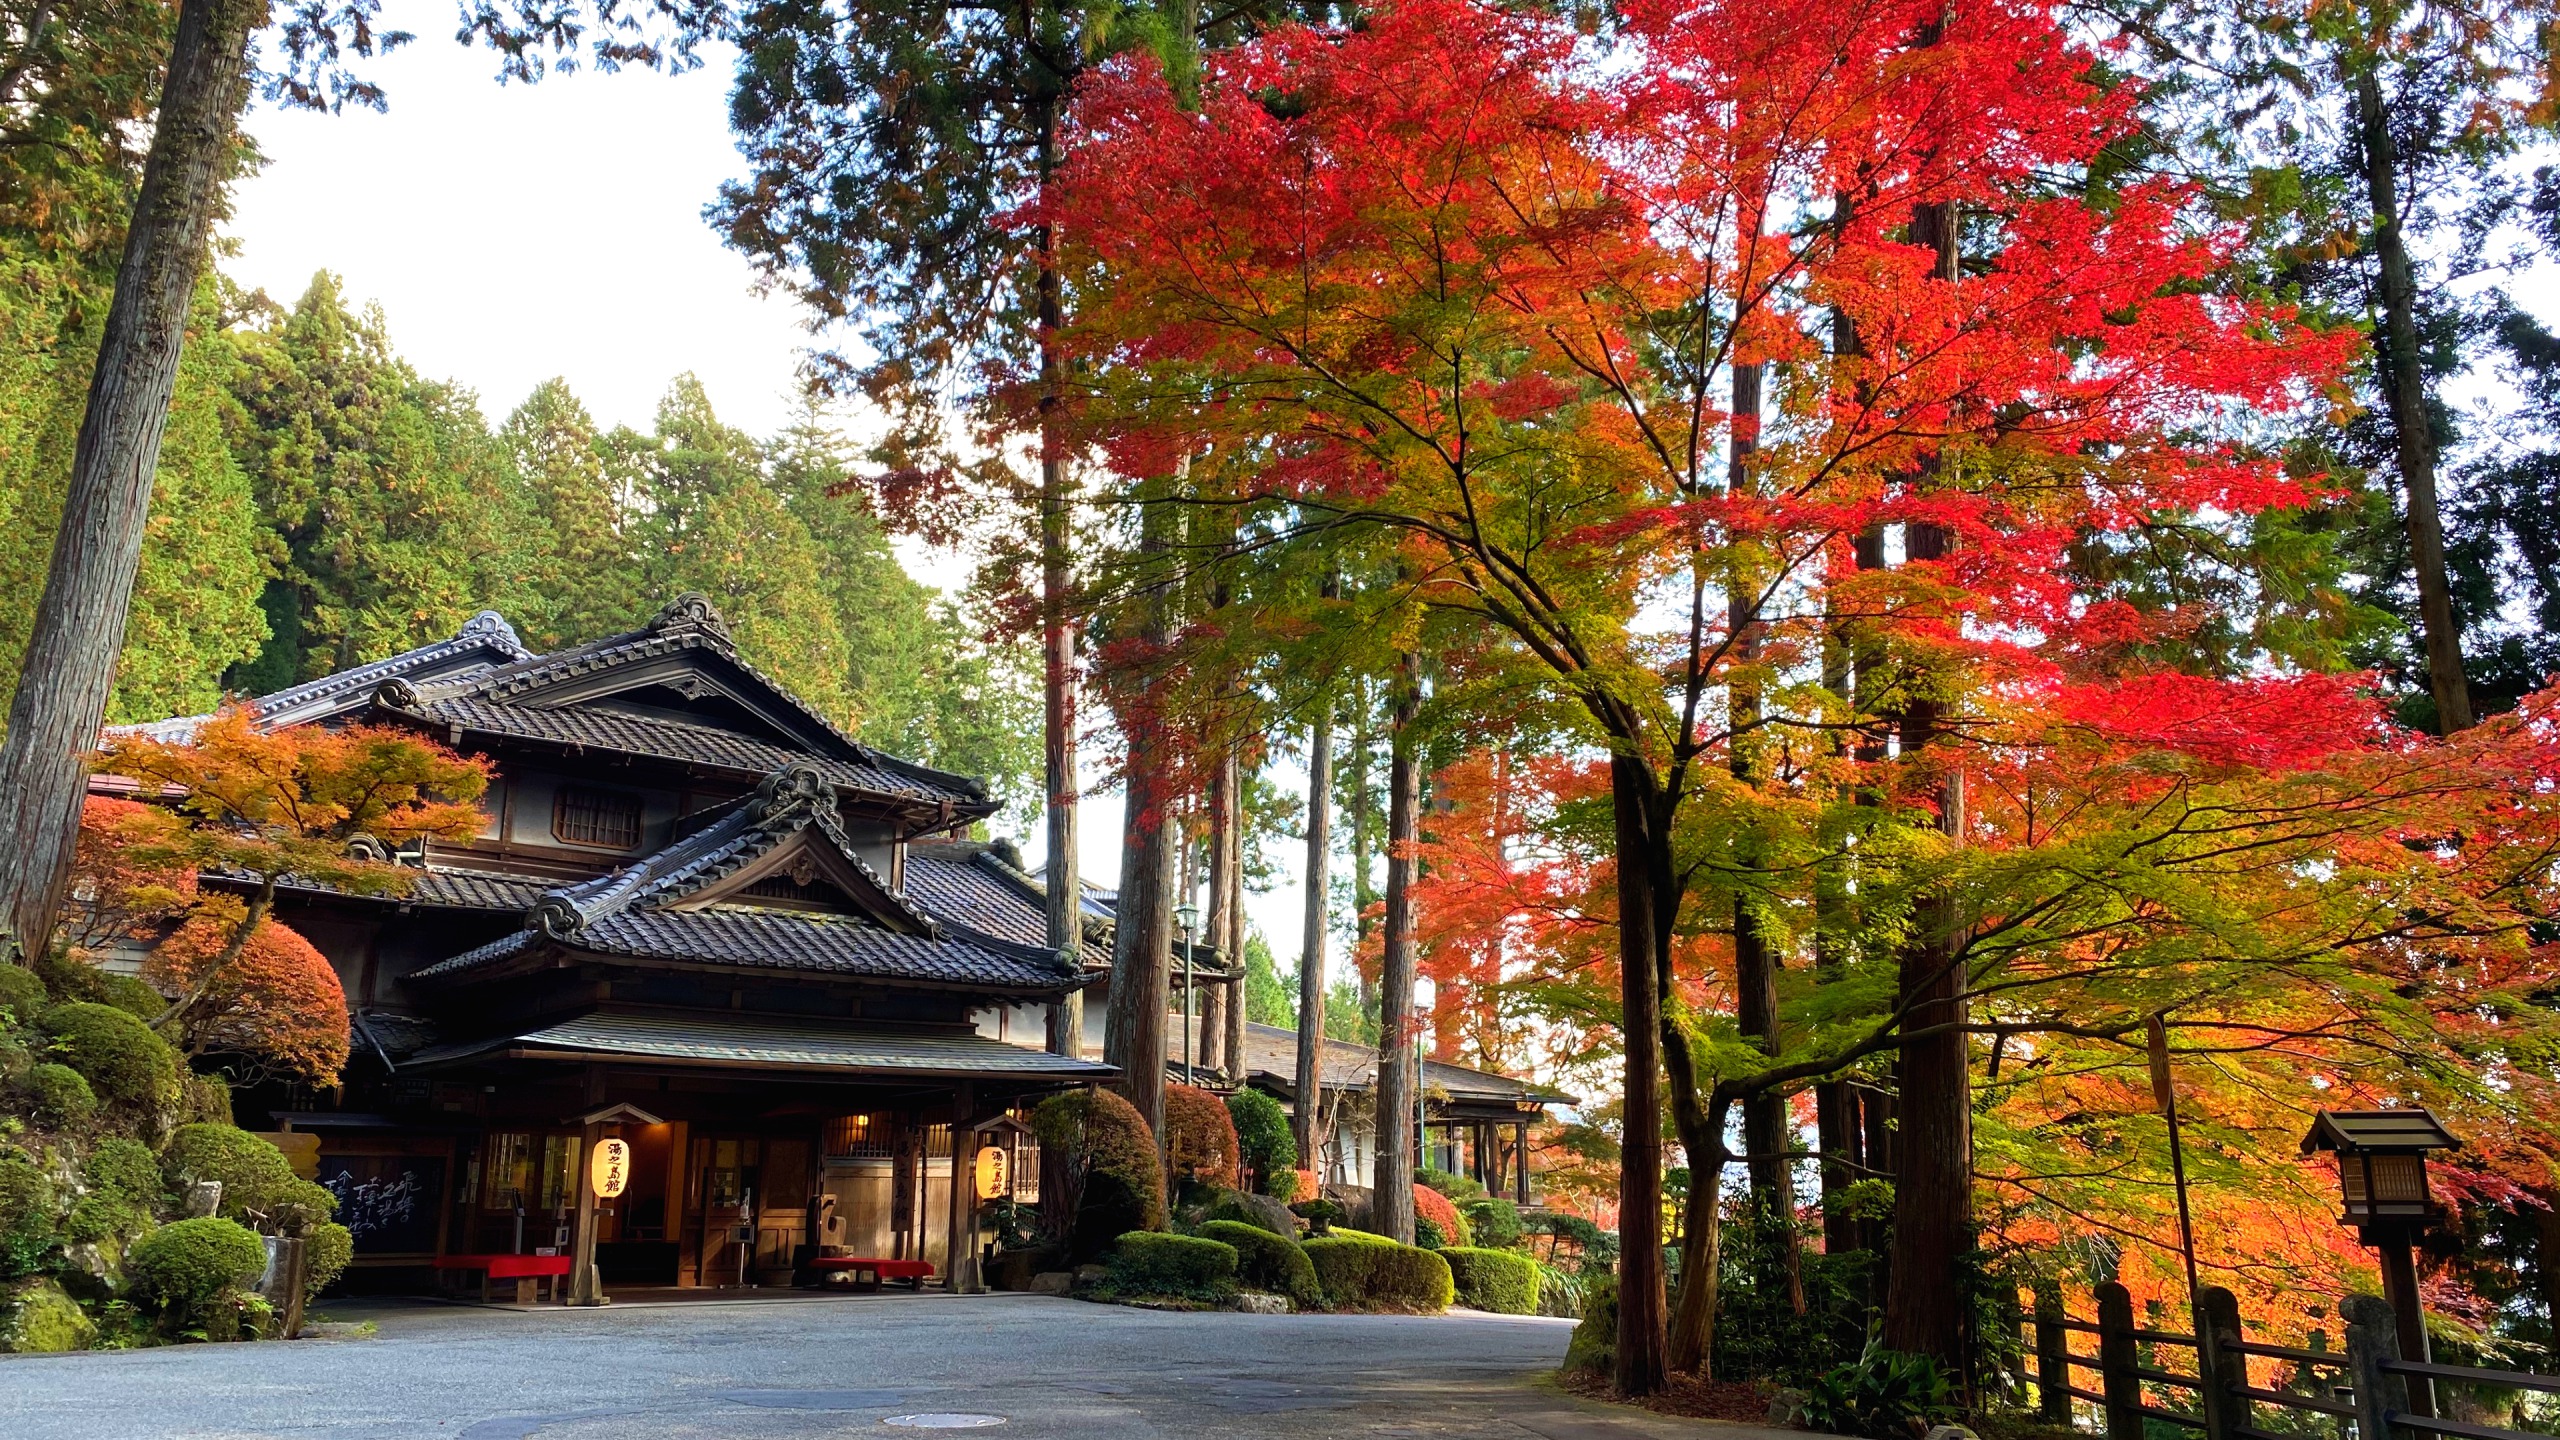 下呂温泉で部屋食がとれて、近くで紅葉をみながら散歩できる旅館がいいです。教えてください。